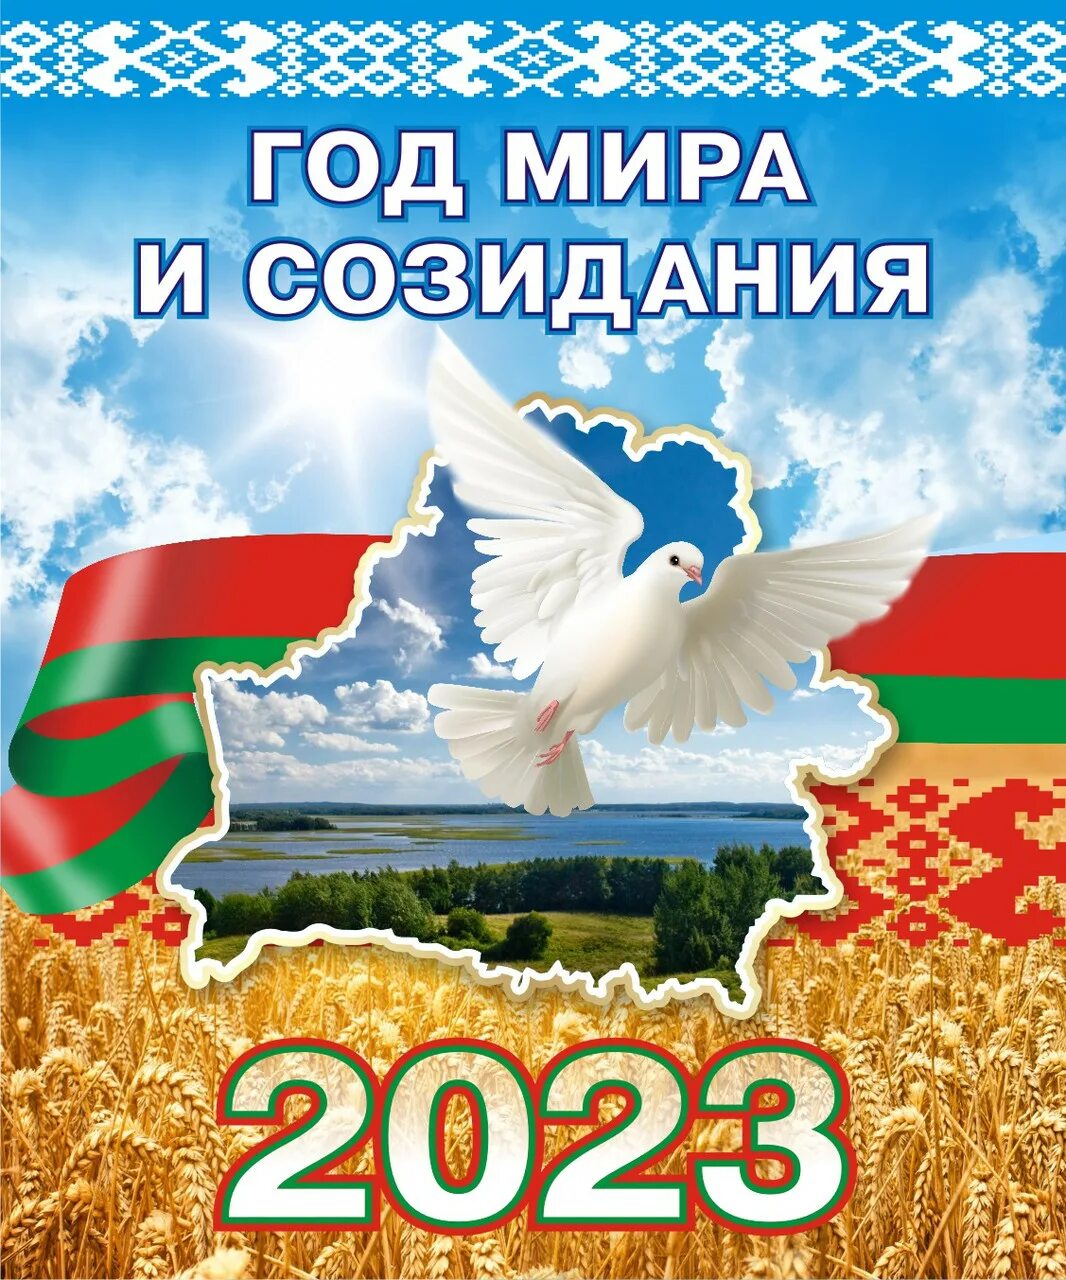 2023 Год в Беларуси объявлен годом. Картинки на тему Беларусь.